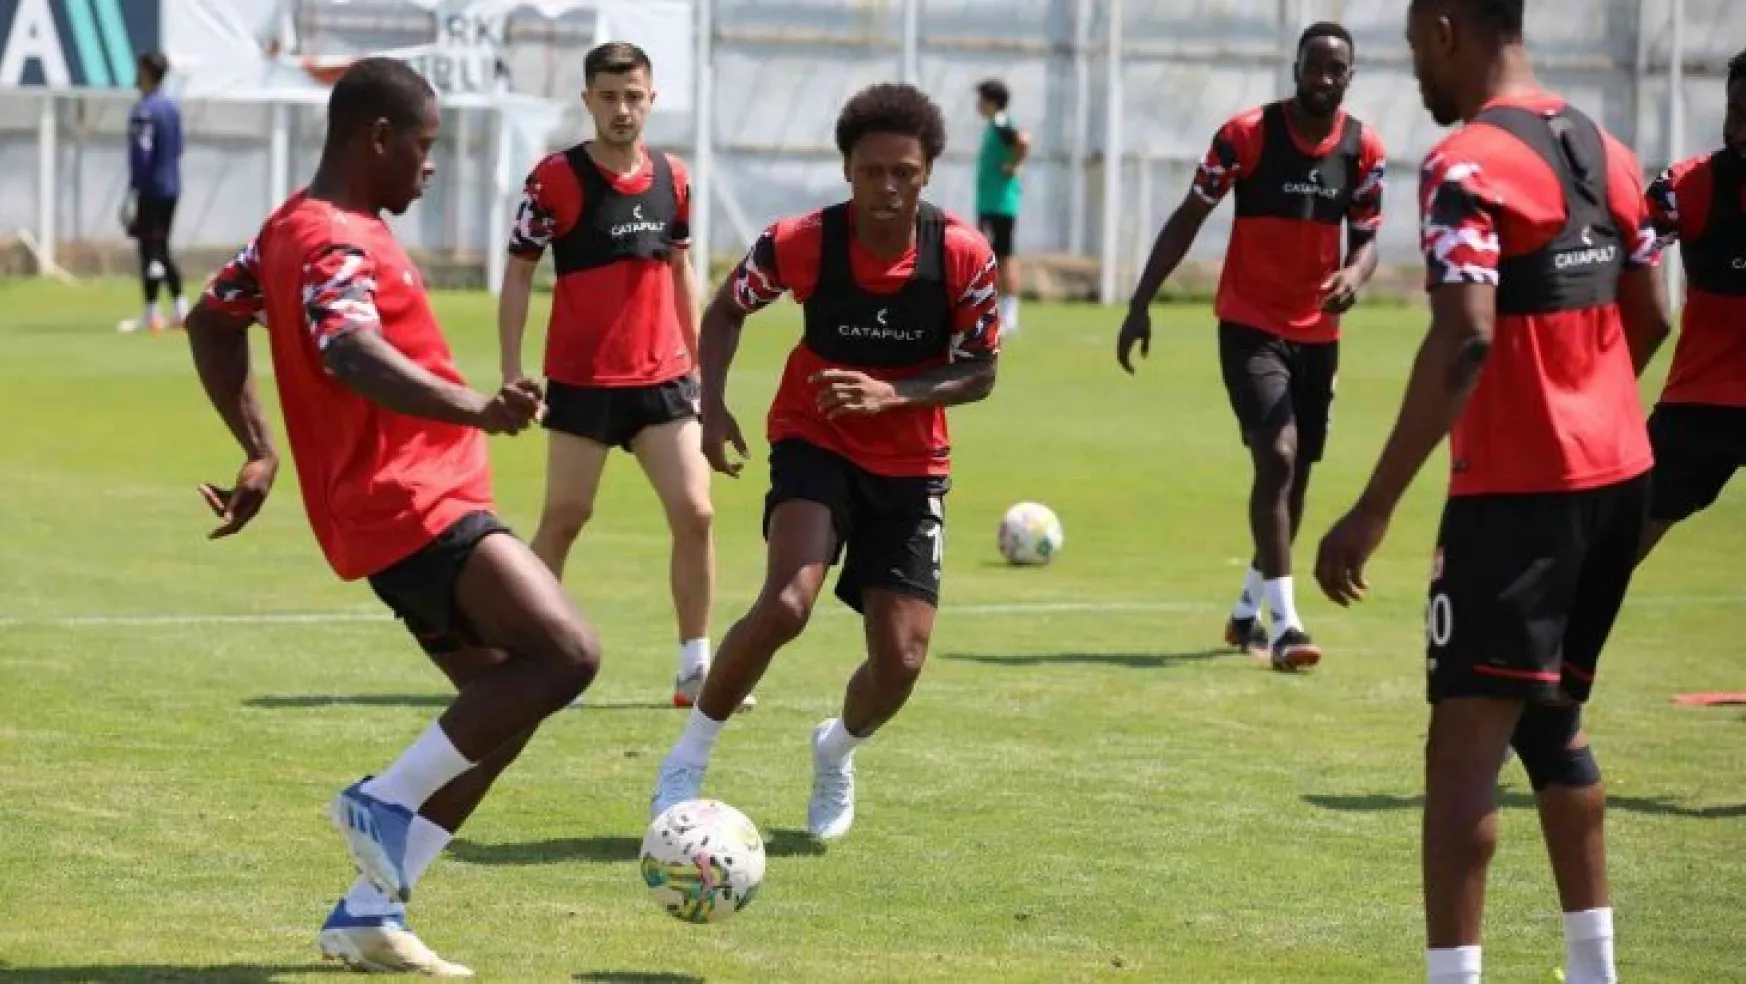 Sivasspor, Gaziantep maçının hazırlıklarını sürdürüyor